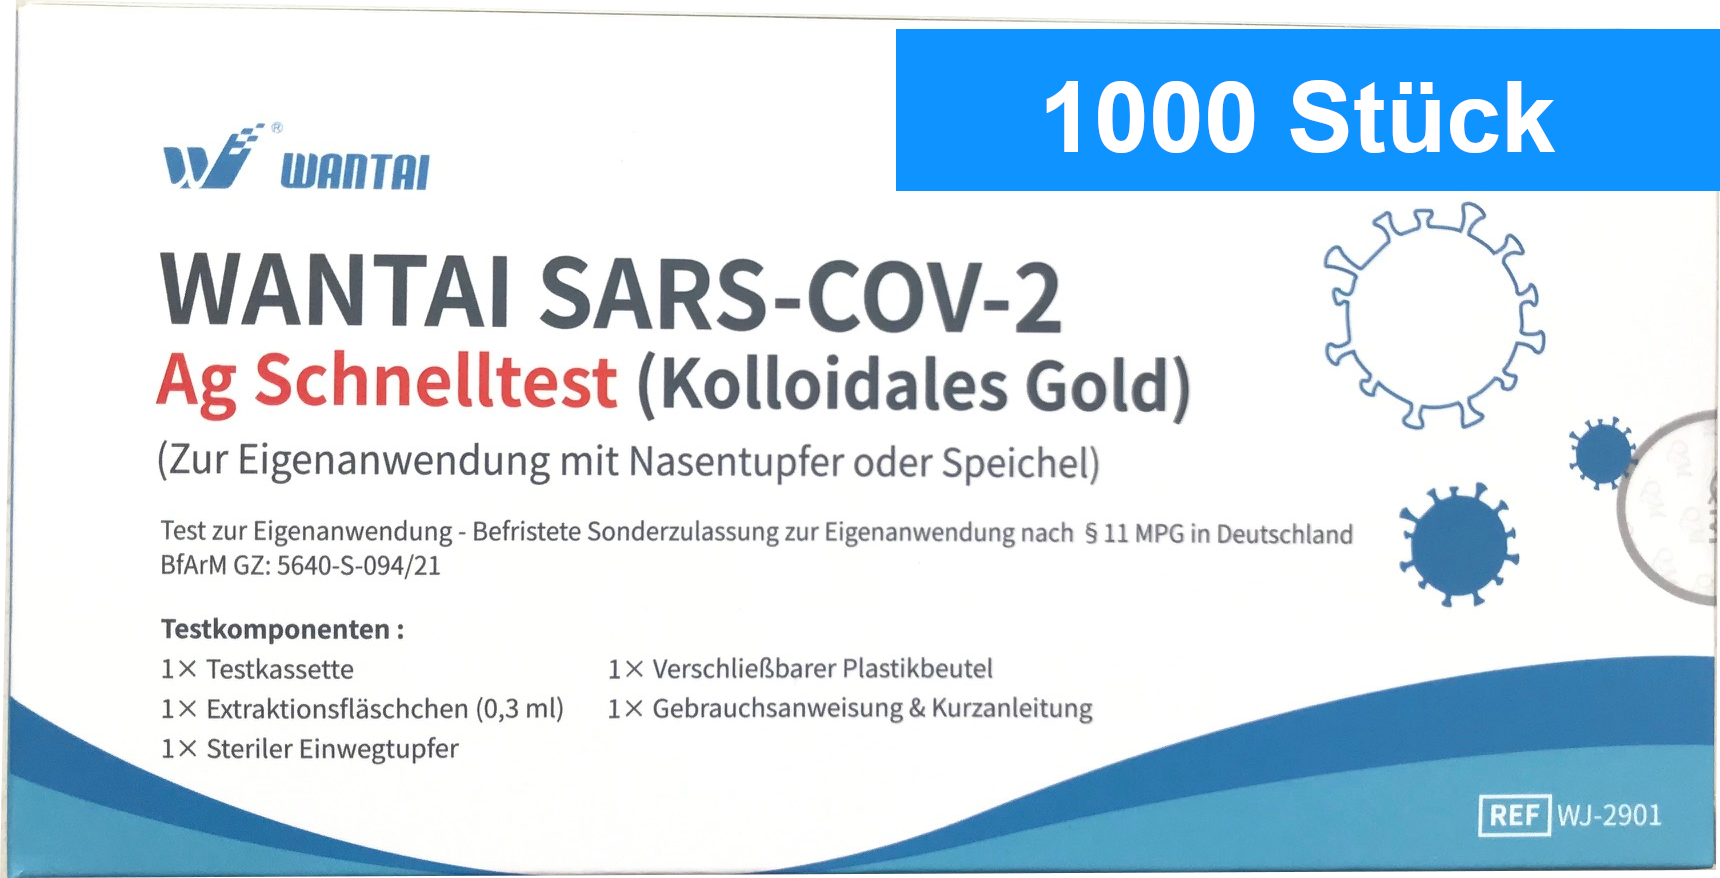 WANTAI SARS-COV-2 Schnelltest zur Eigenanwendung - 1000 Stück (einzeln verpackt)